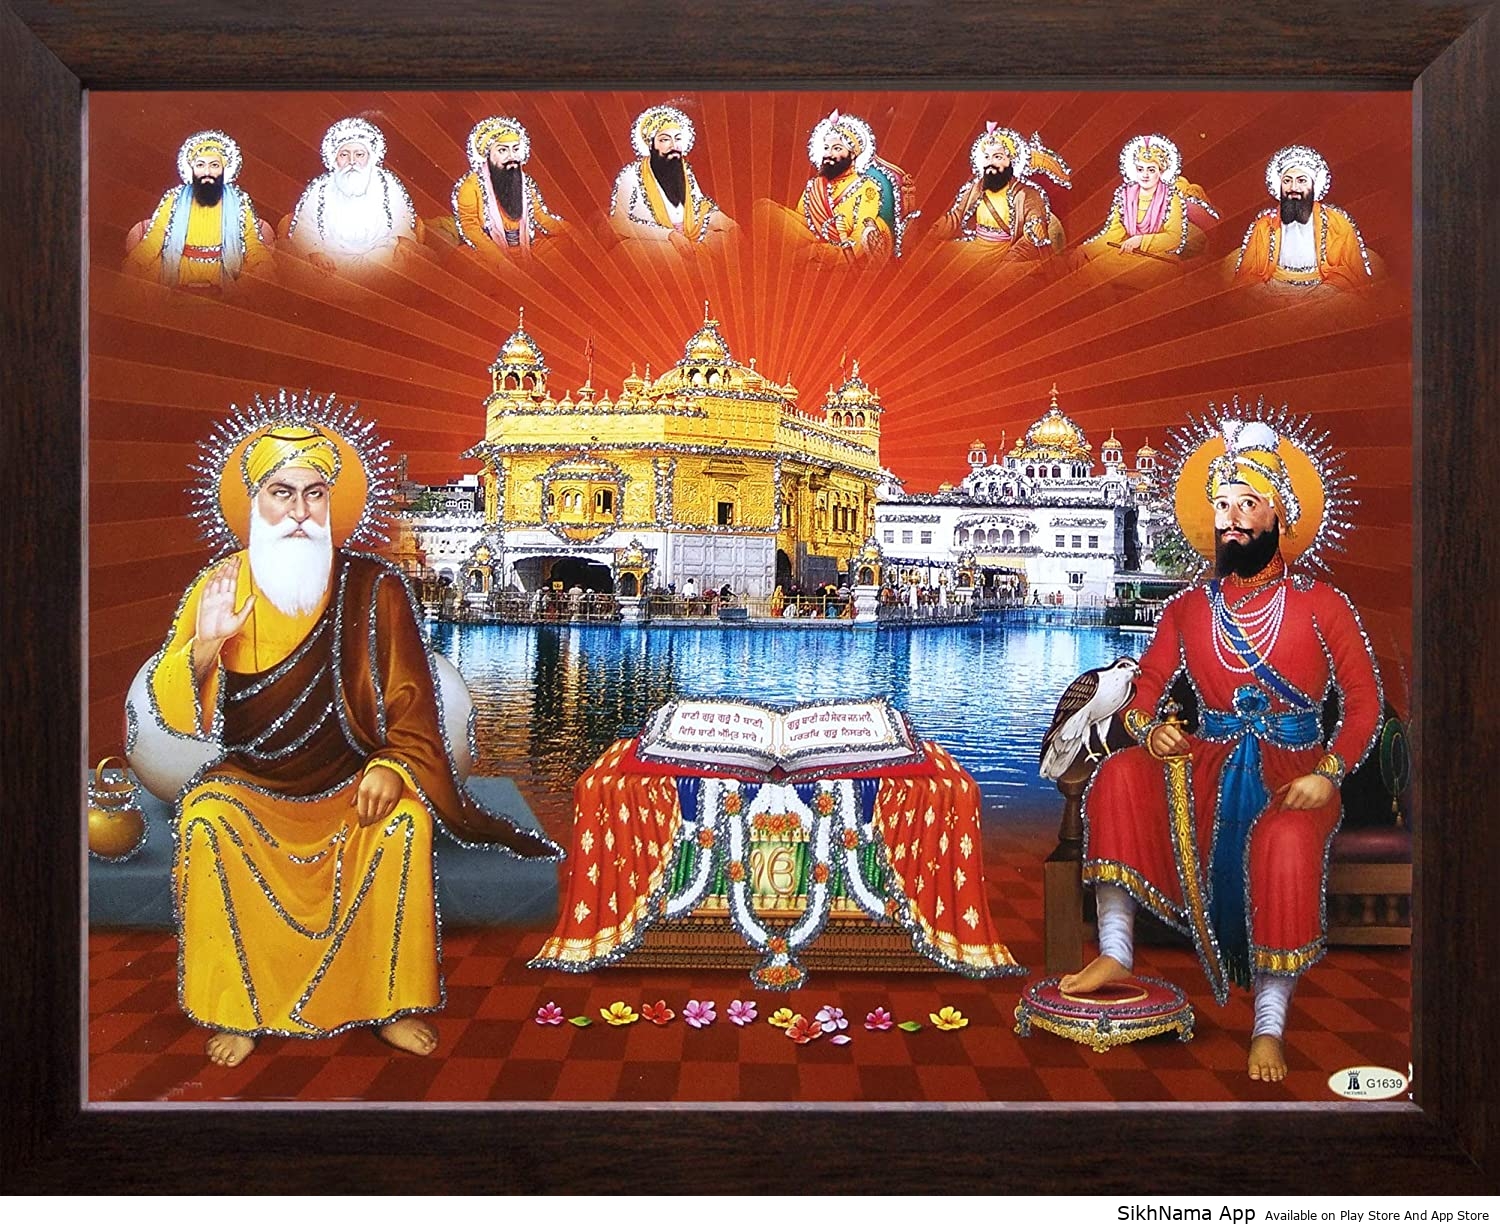 10 Guru Sahbhanji